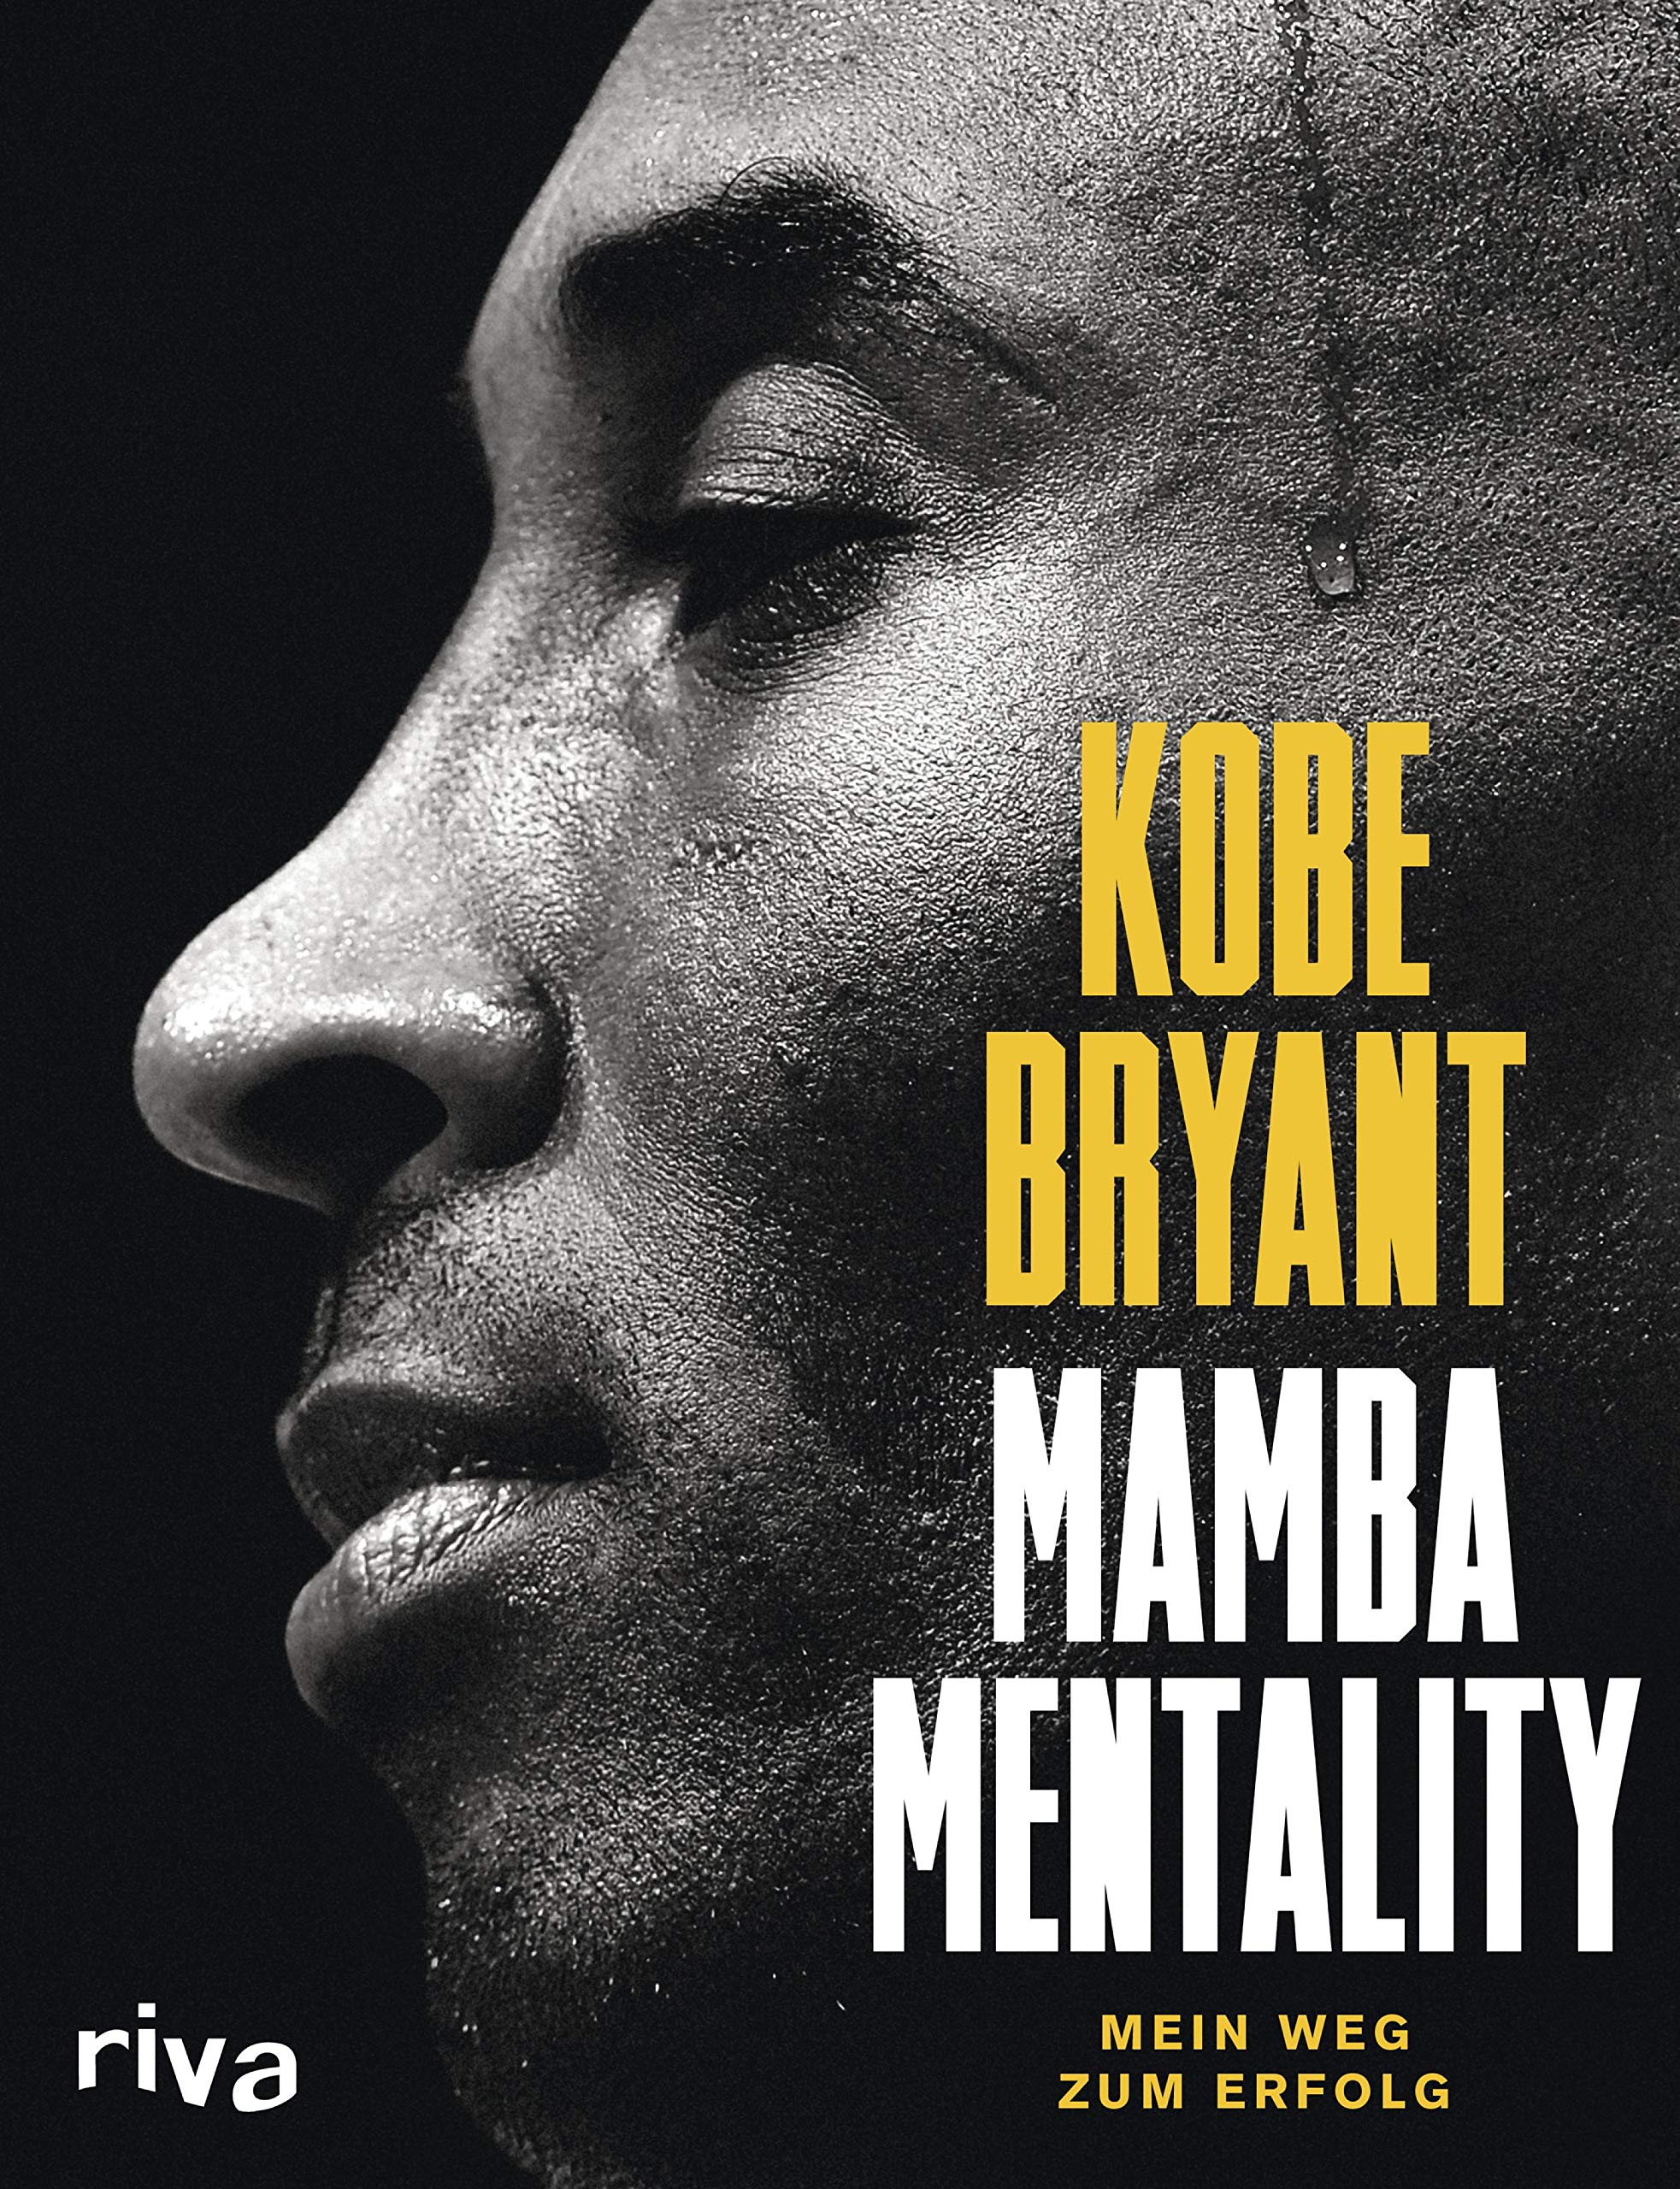 Mamba Mentality: Mein Weg zum Erfolg. Das Mindset der NBA-Legende. Die Karriere eines der besten Basketballer aller Zeiten in faszinierenden Bildern und inspirierenden Geschichten (German Edition)